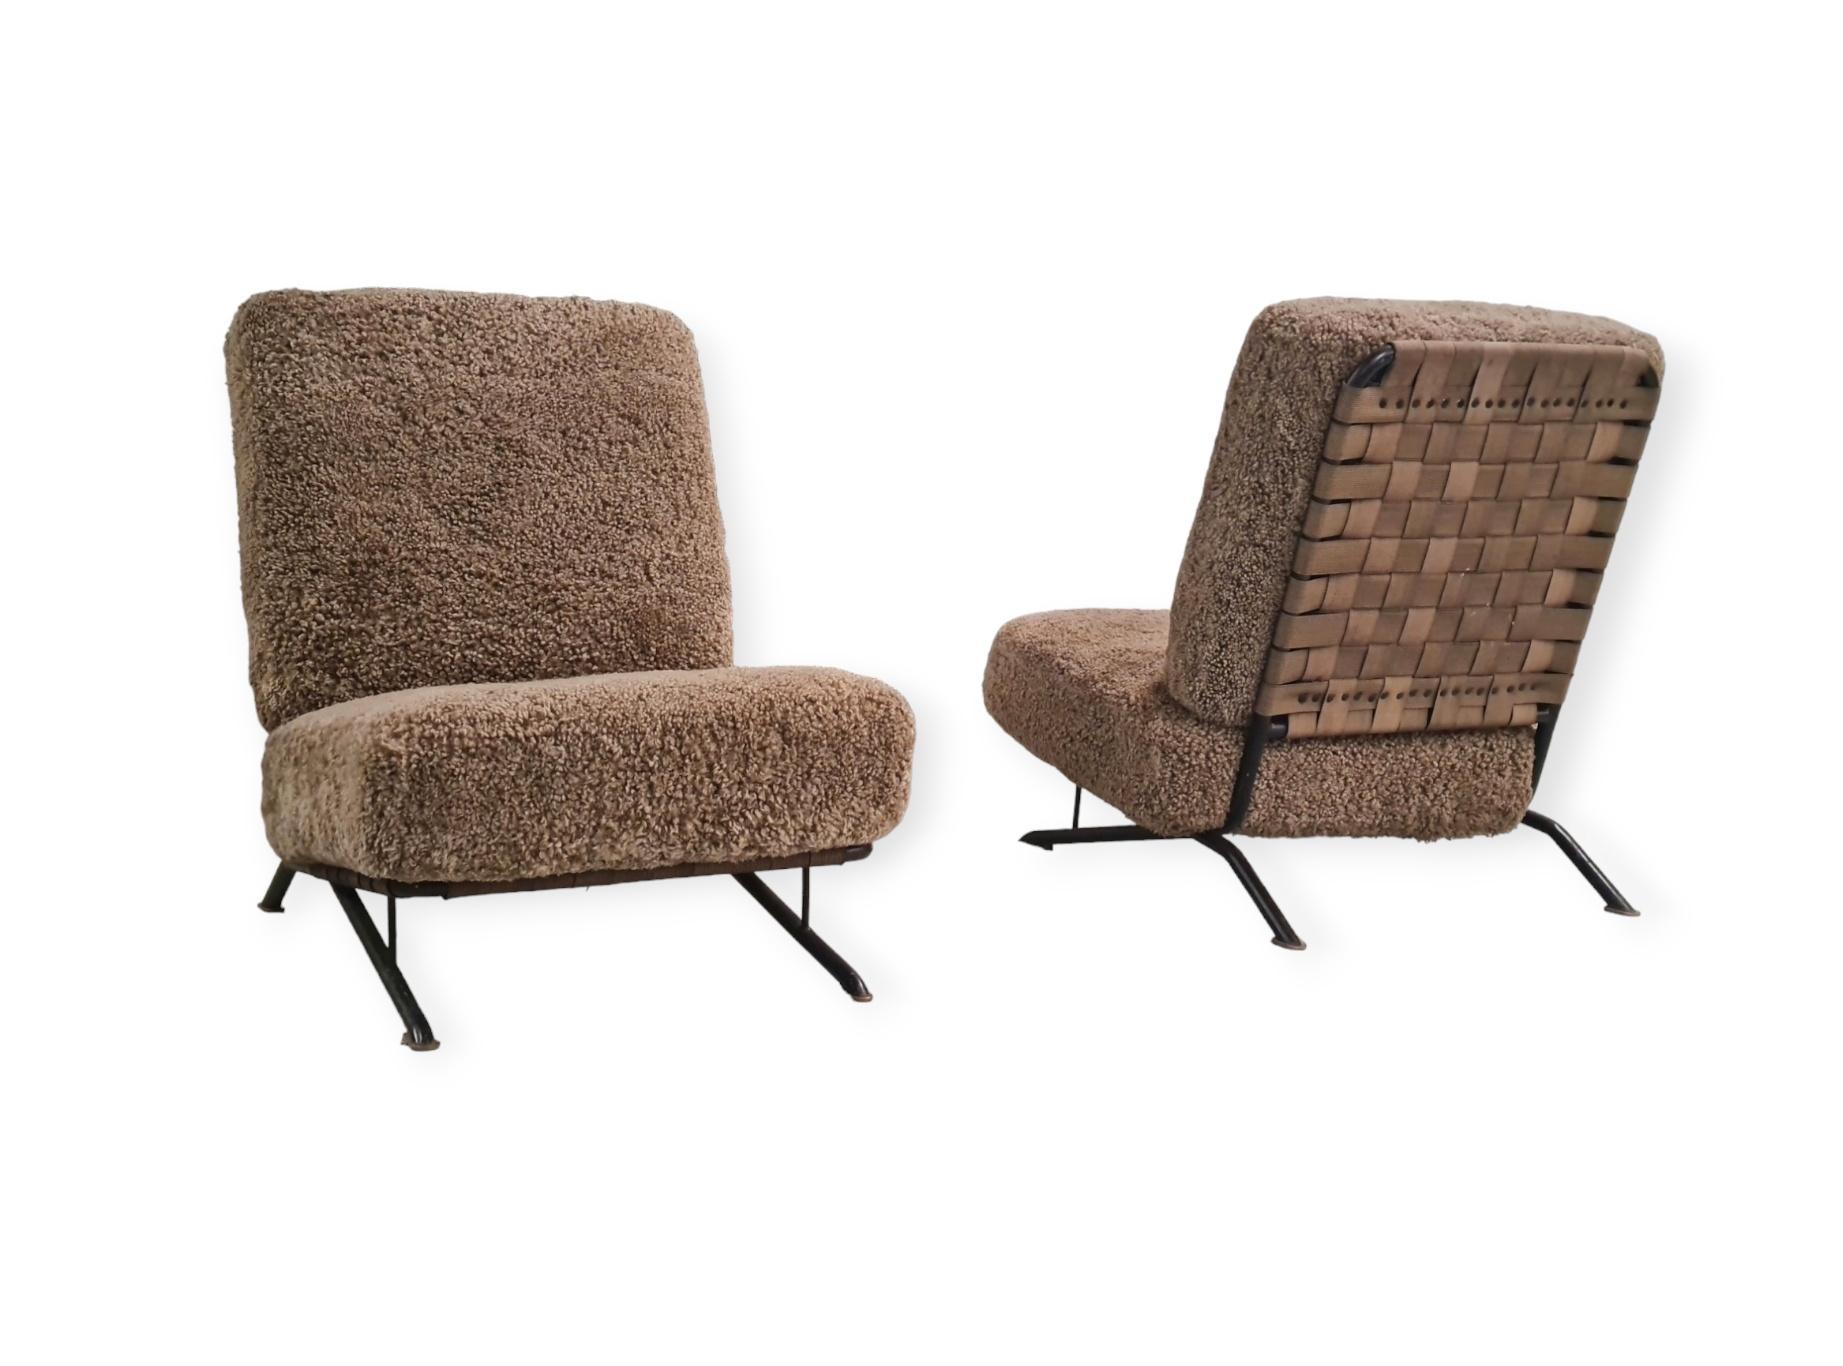 Scandinavian Modern Pair of Commissioned Ilmari Tapiovaara Lounge Chairs, Merivaara 1950s For Sale